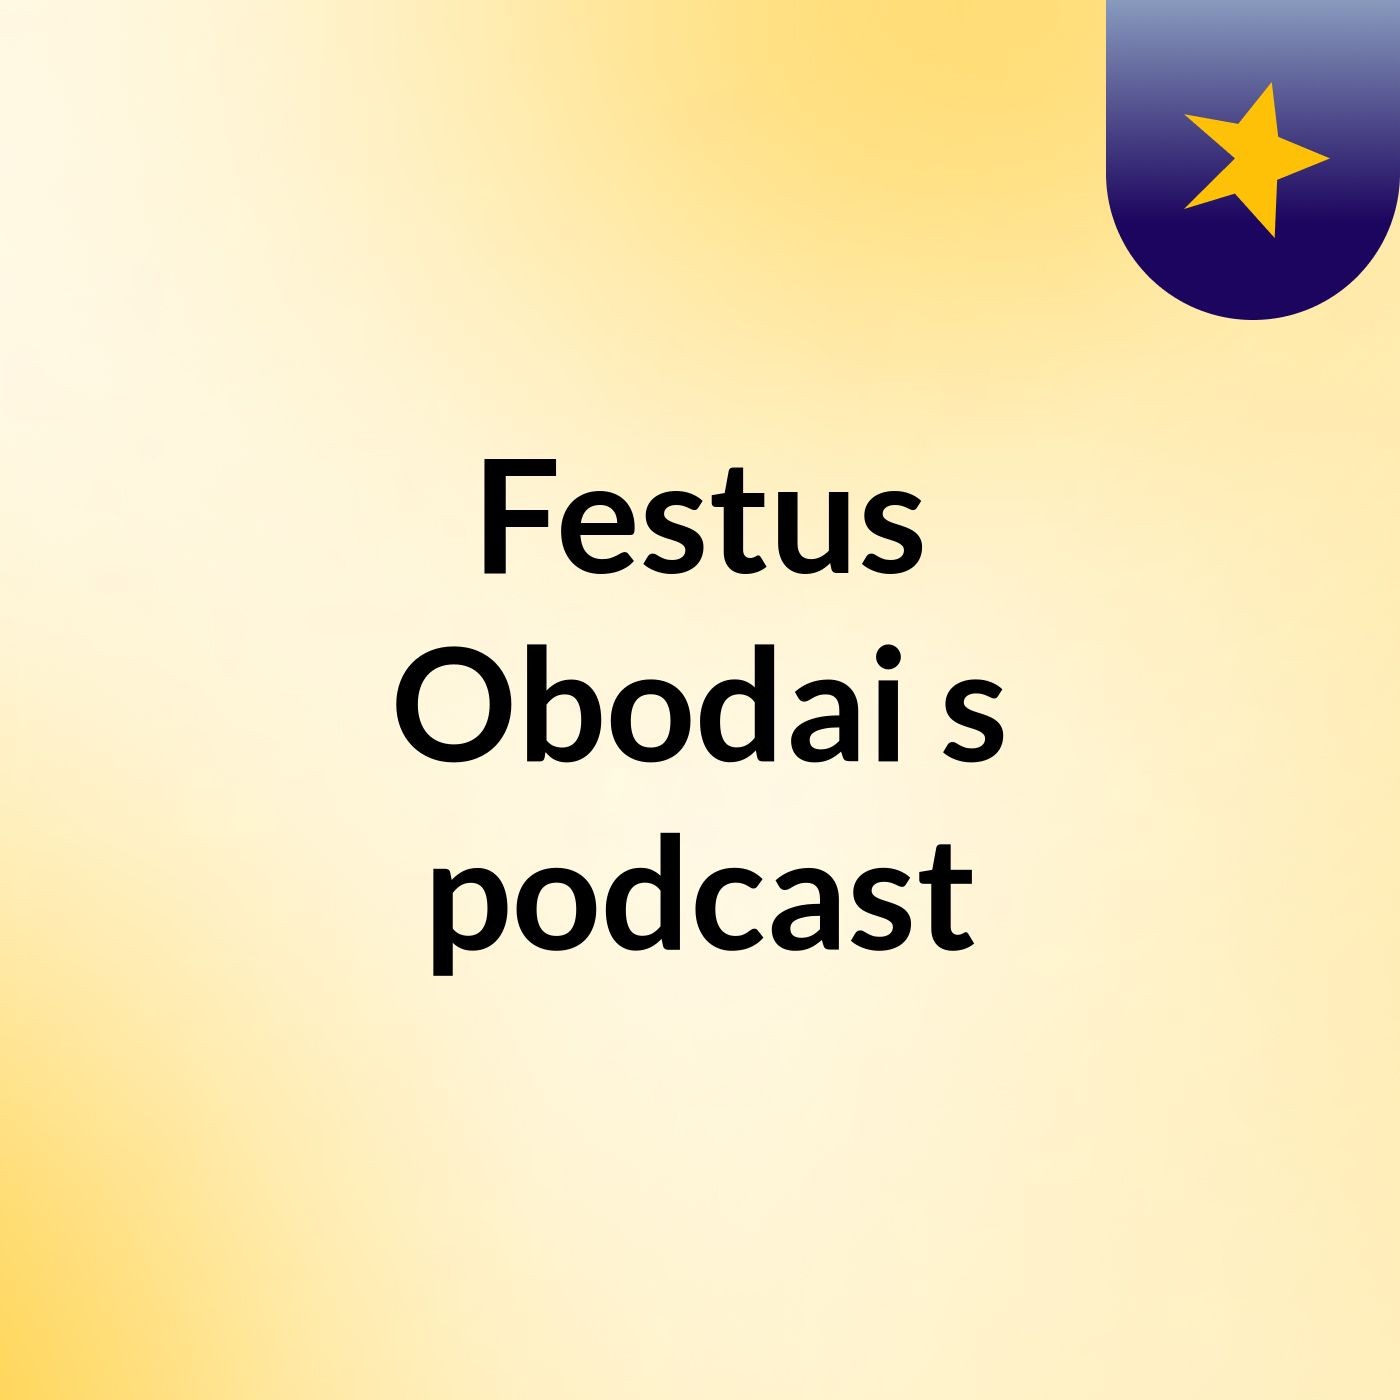 Episode 5 - Festus Obodai's podcast